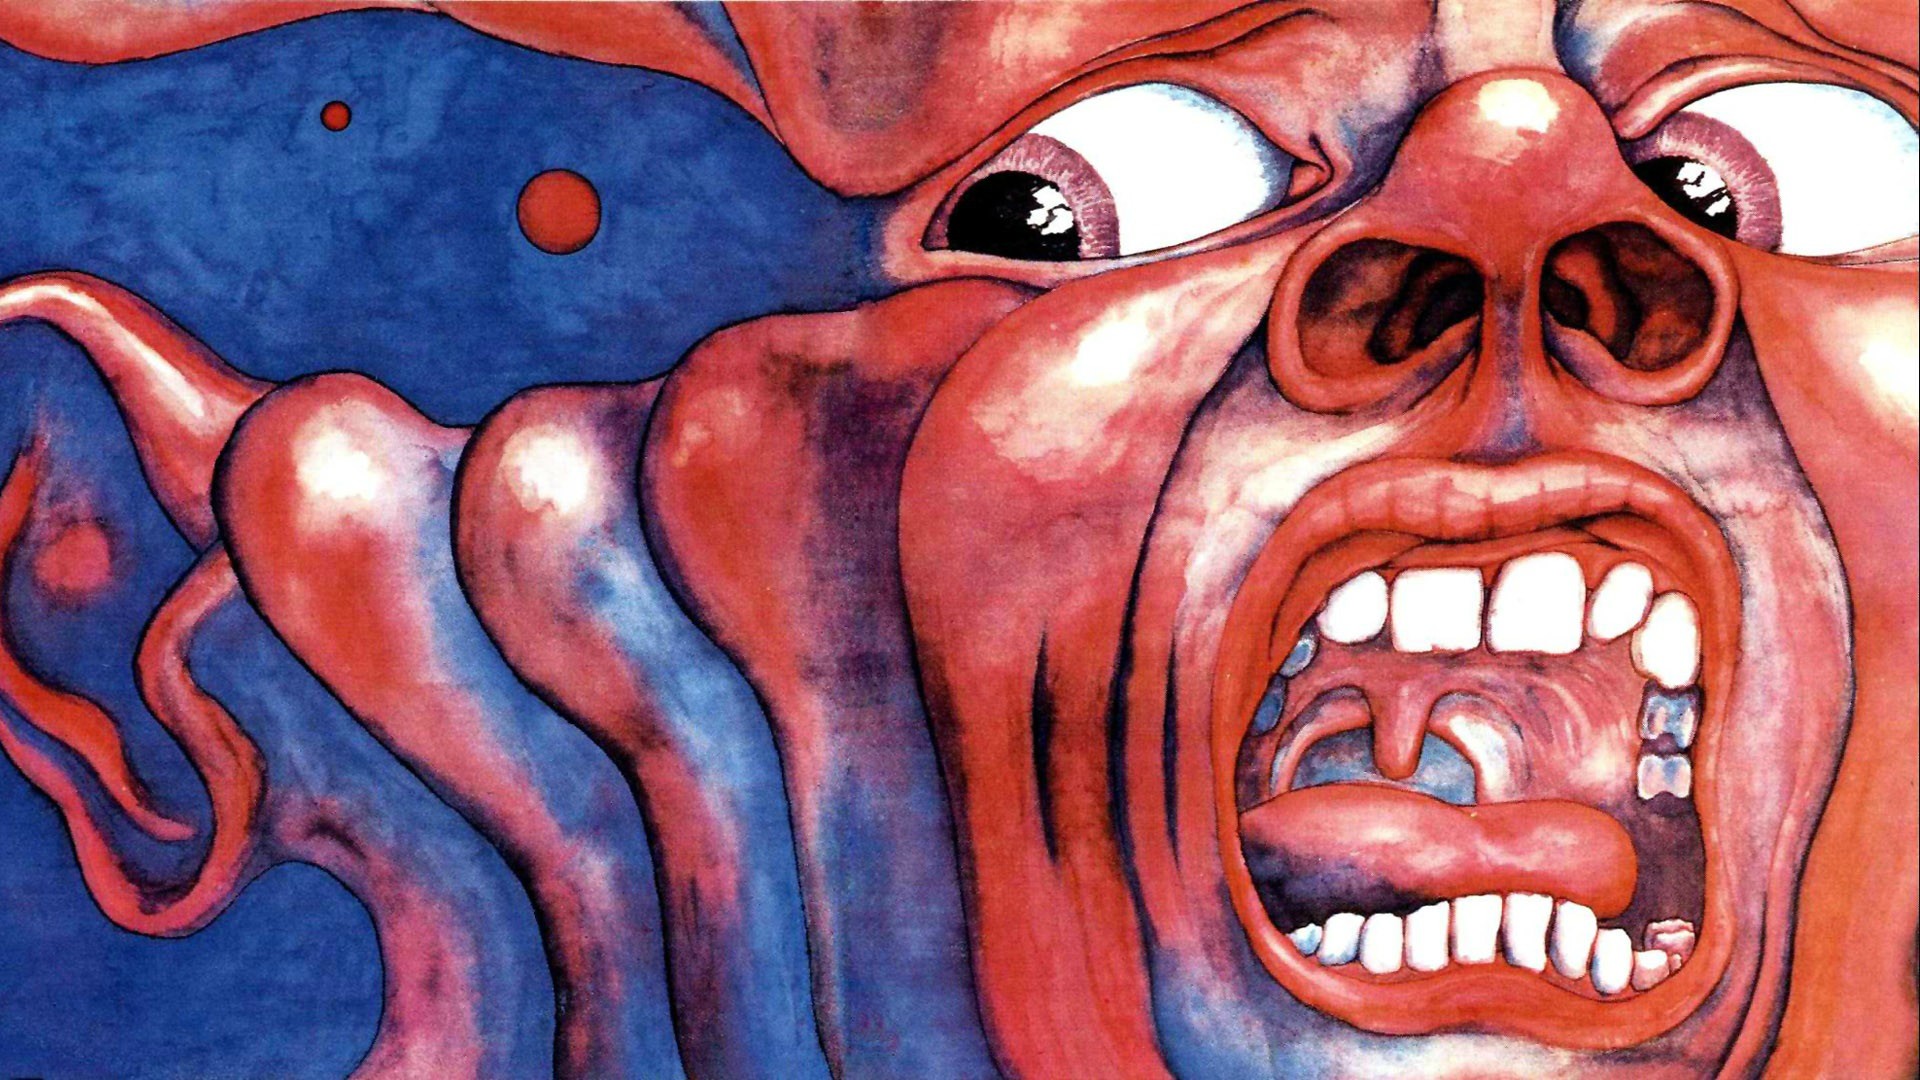 47+] King Crimson Wallpaper - WallpaperSafari